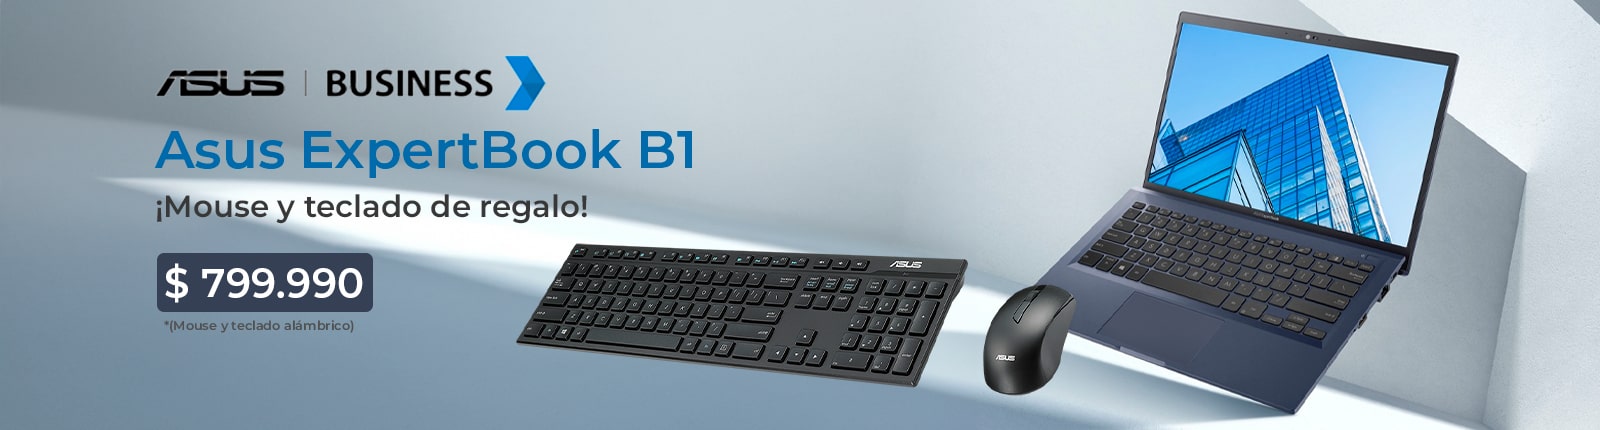 Asus ExpertBook B1 teclado y mouse de regalo